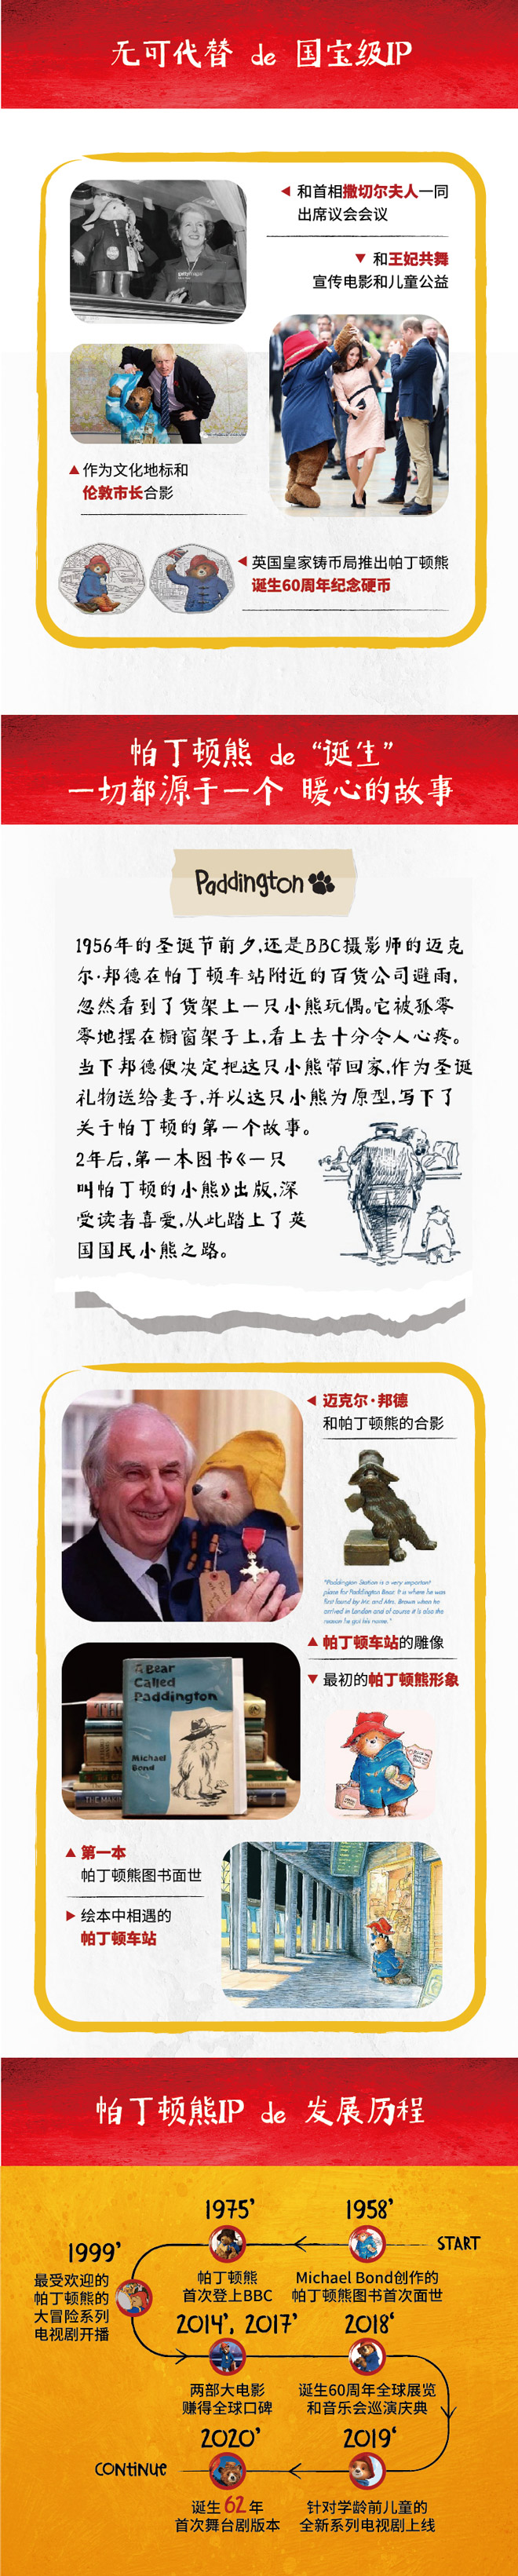 2021大船文化·外百老汇亲子剧《帕丁顿熊之小熊当家》中国制作版-北京站